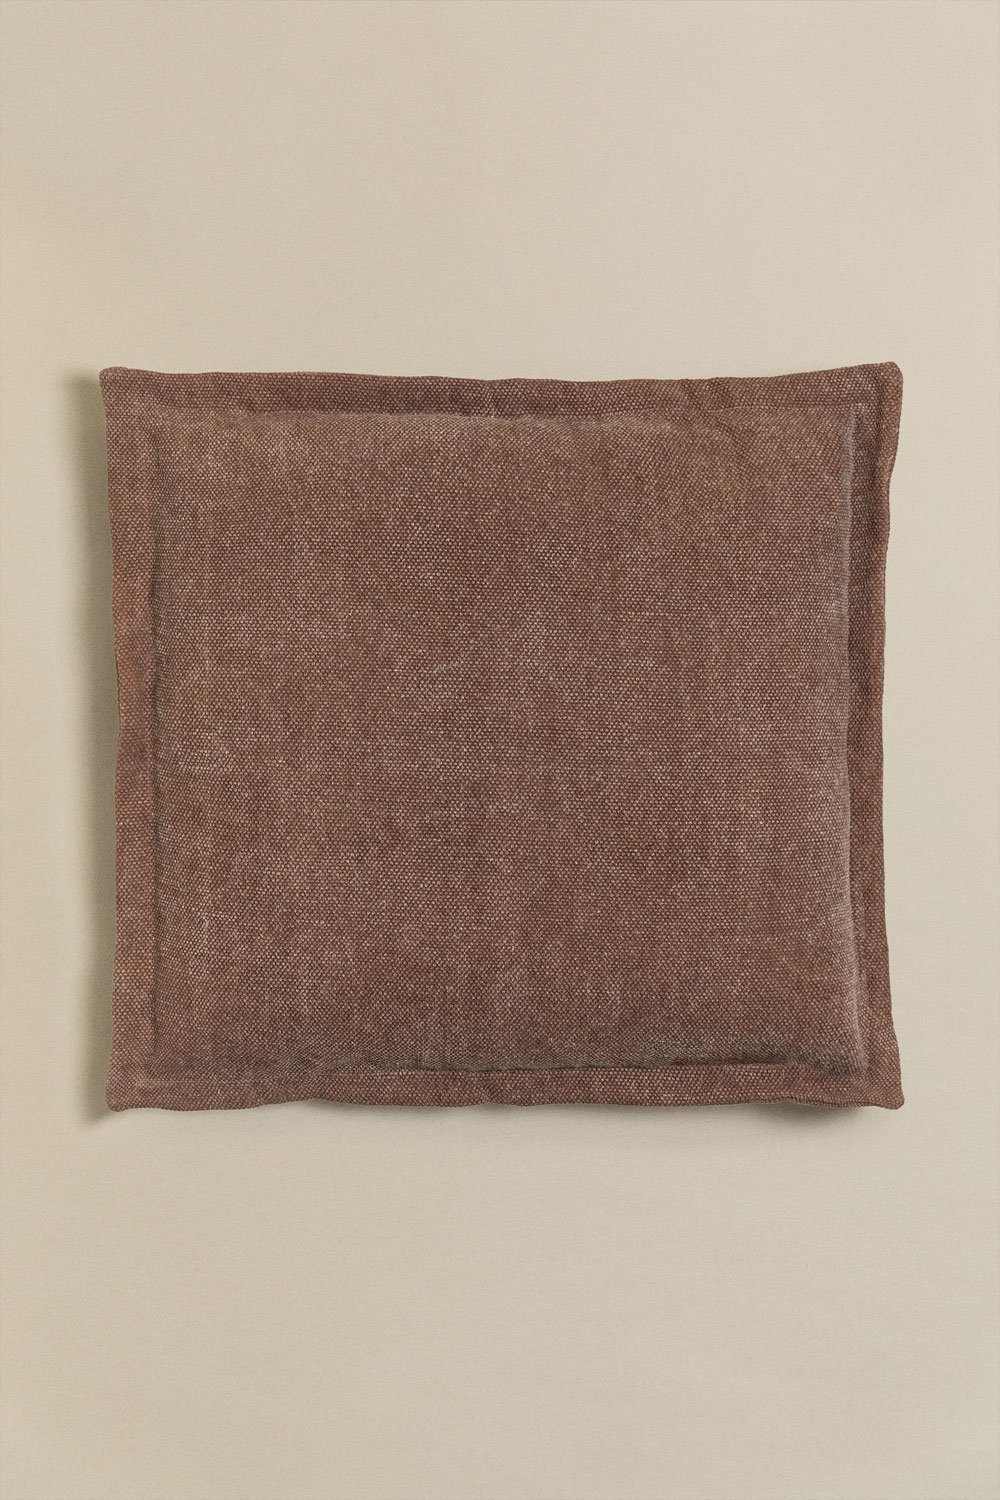 Kwadratowa poduszka bawełniana (60x60 cm) Karzem, obrazek w galerii 1